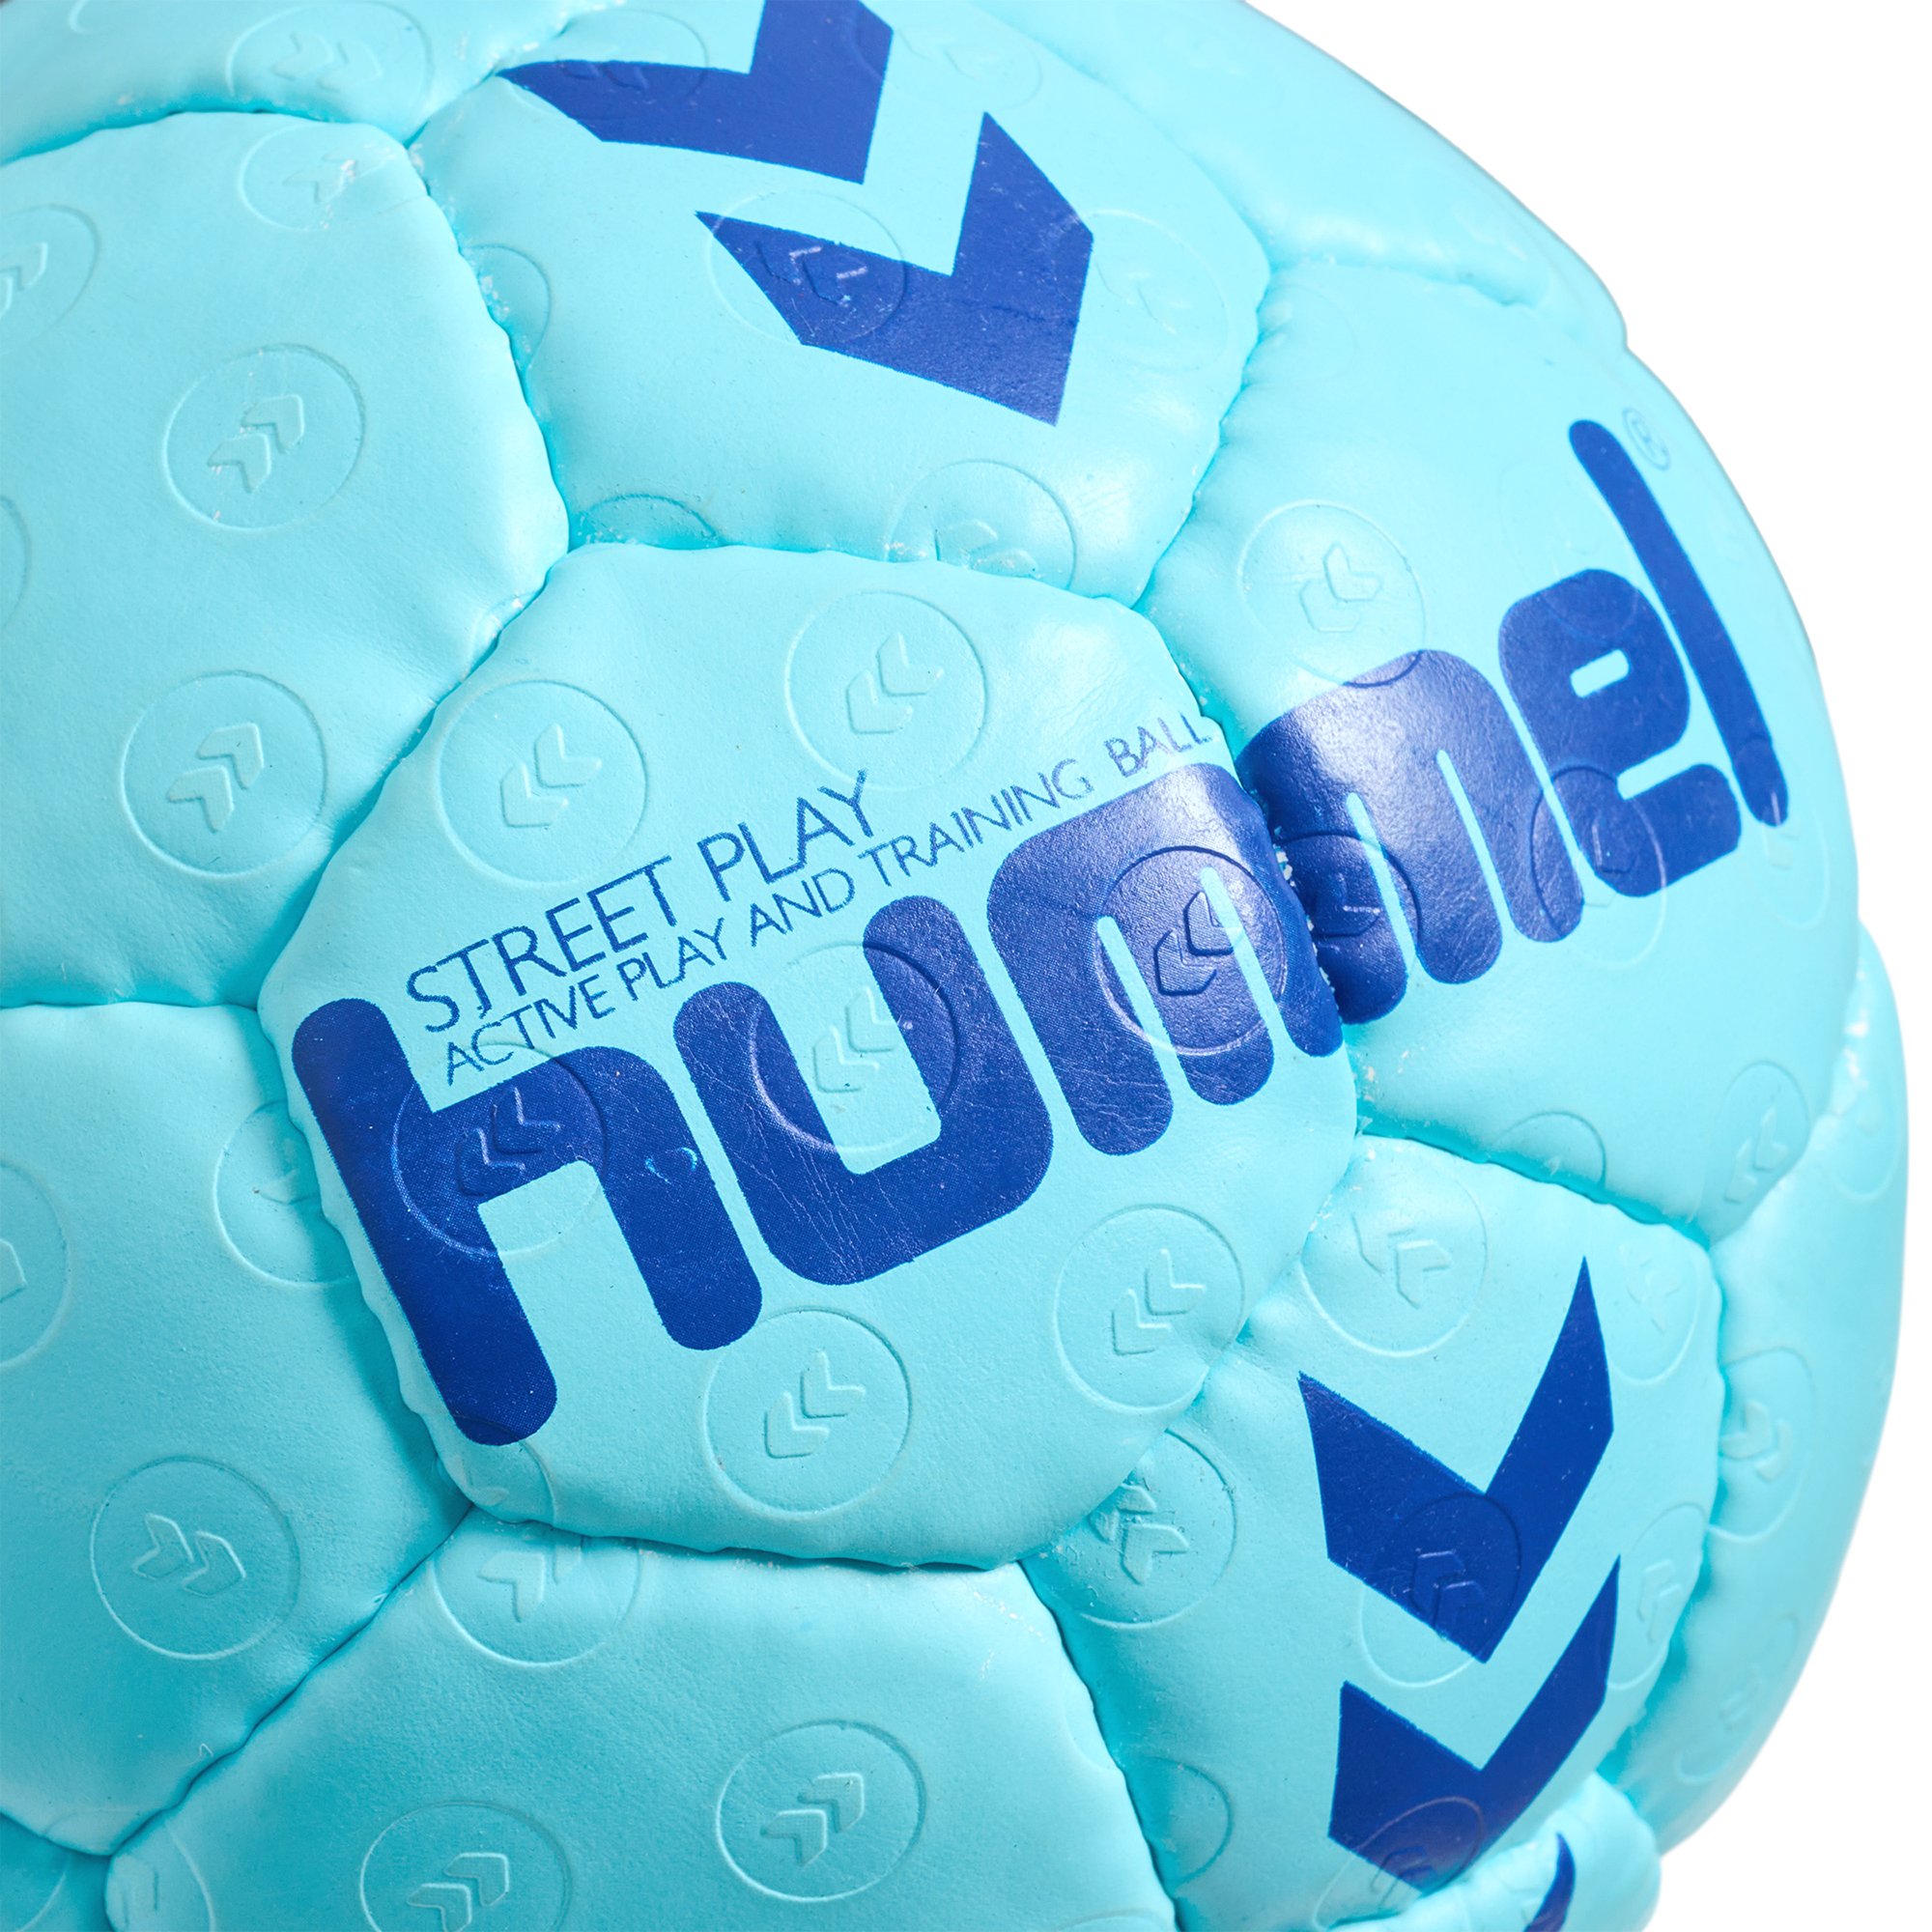 Hummel Handball Street Handbälle Play 